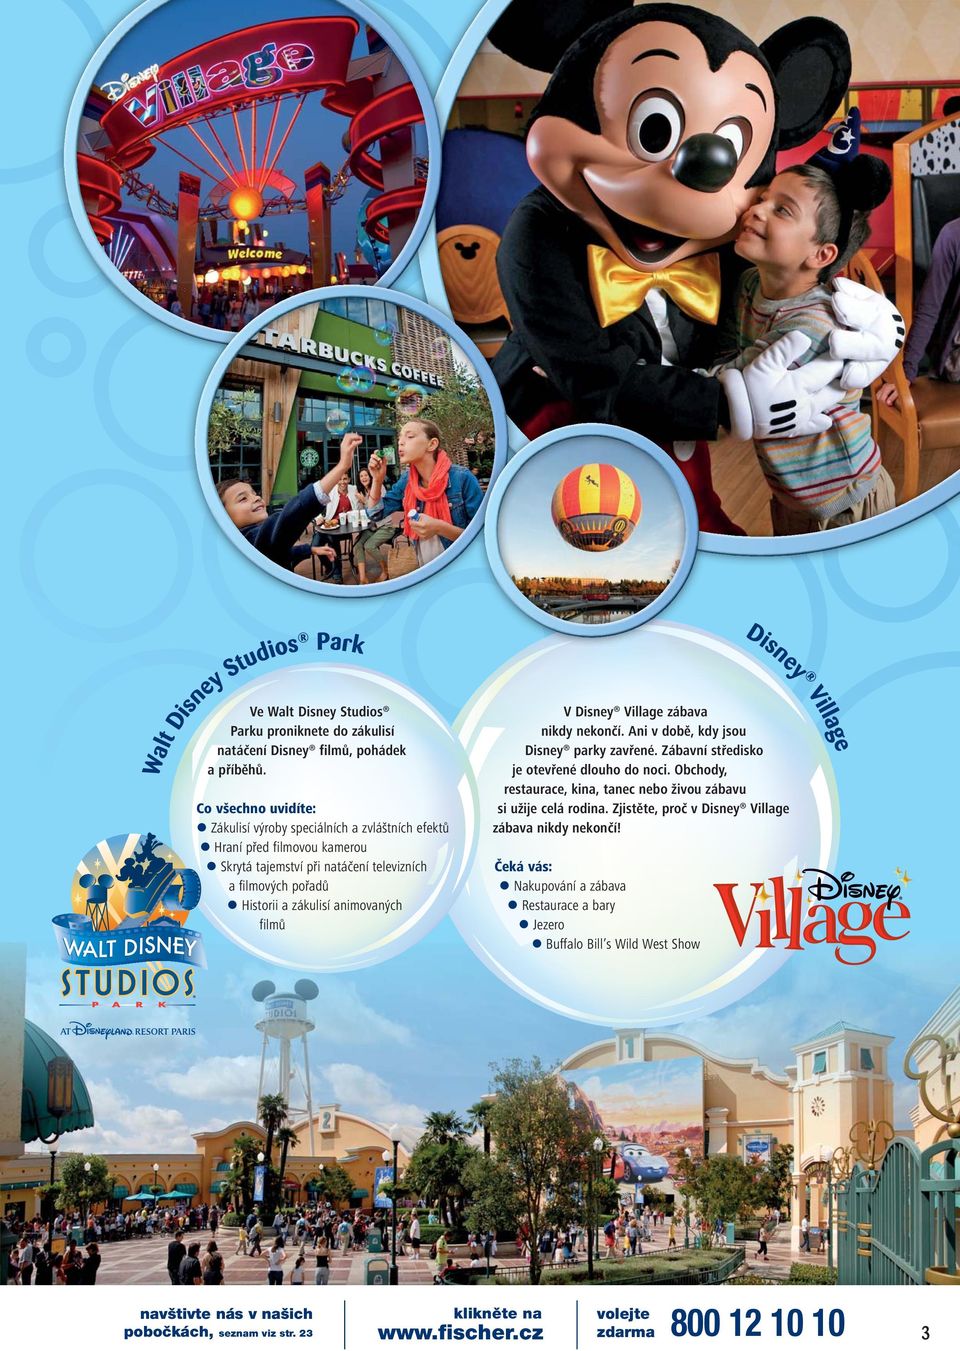 filmových pořadů Historii a zákulisí animovaných filmů Disney Village V Disney Village zábava nikdy nekončí. Ani v době, kdy jsou Disney parky zavřené.